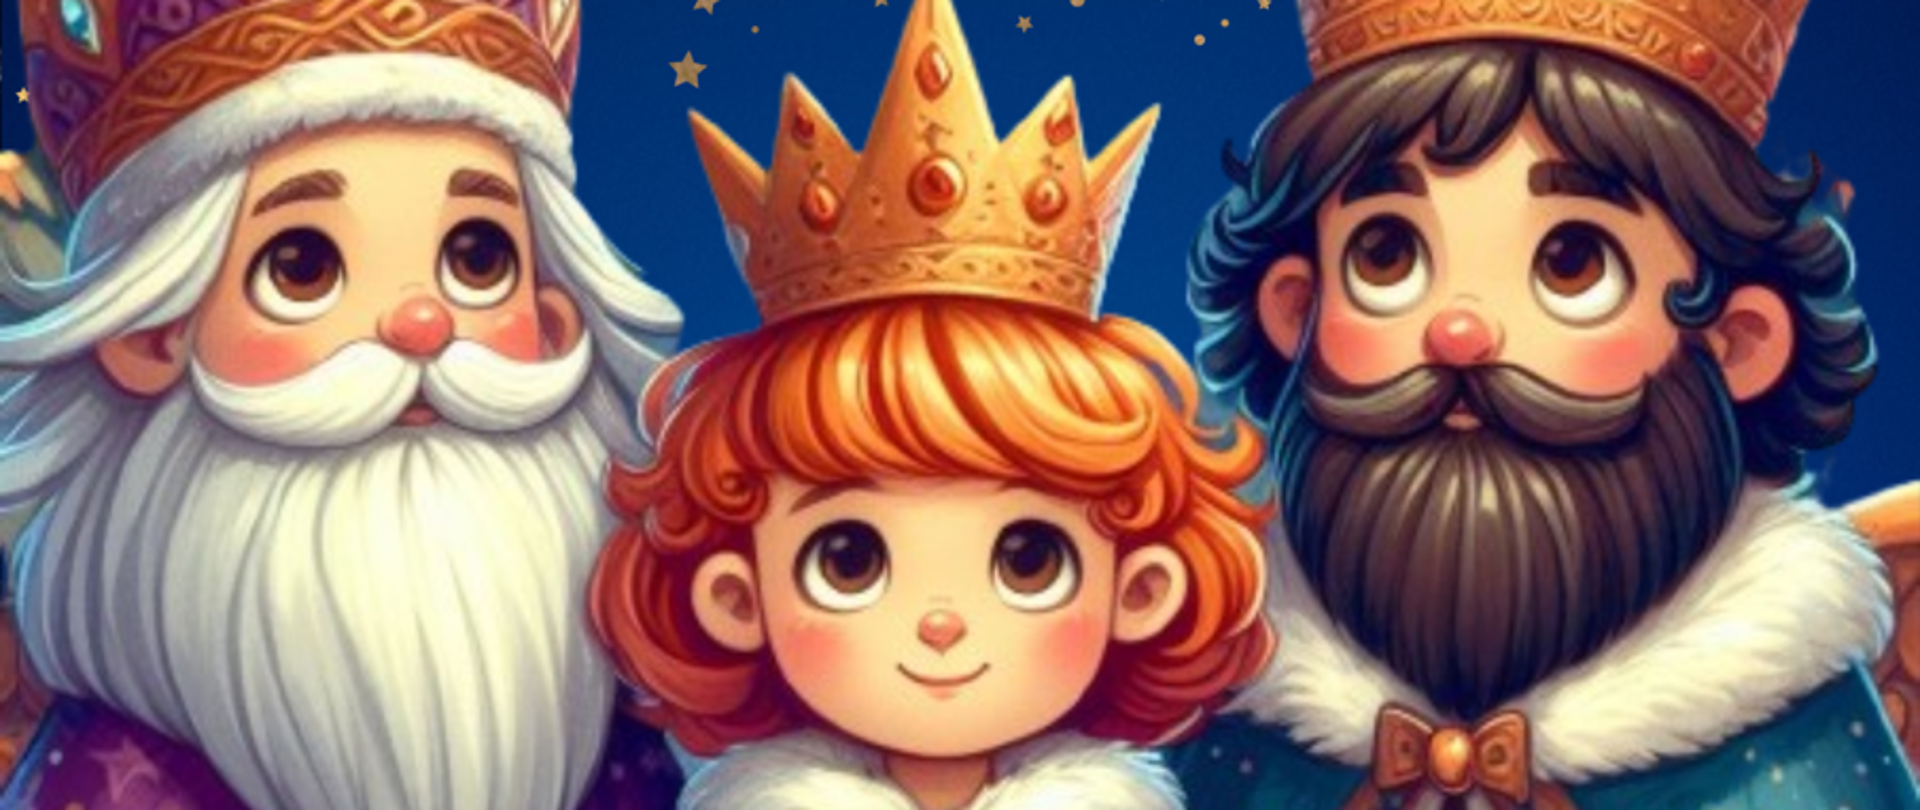 Plakat wydarzenia – kolorowa grafika przedstawiająca trzy postacie w płaszczach i złotych koronach na głowach